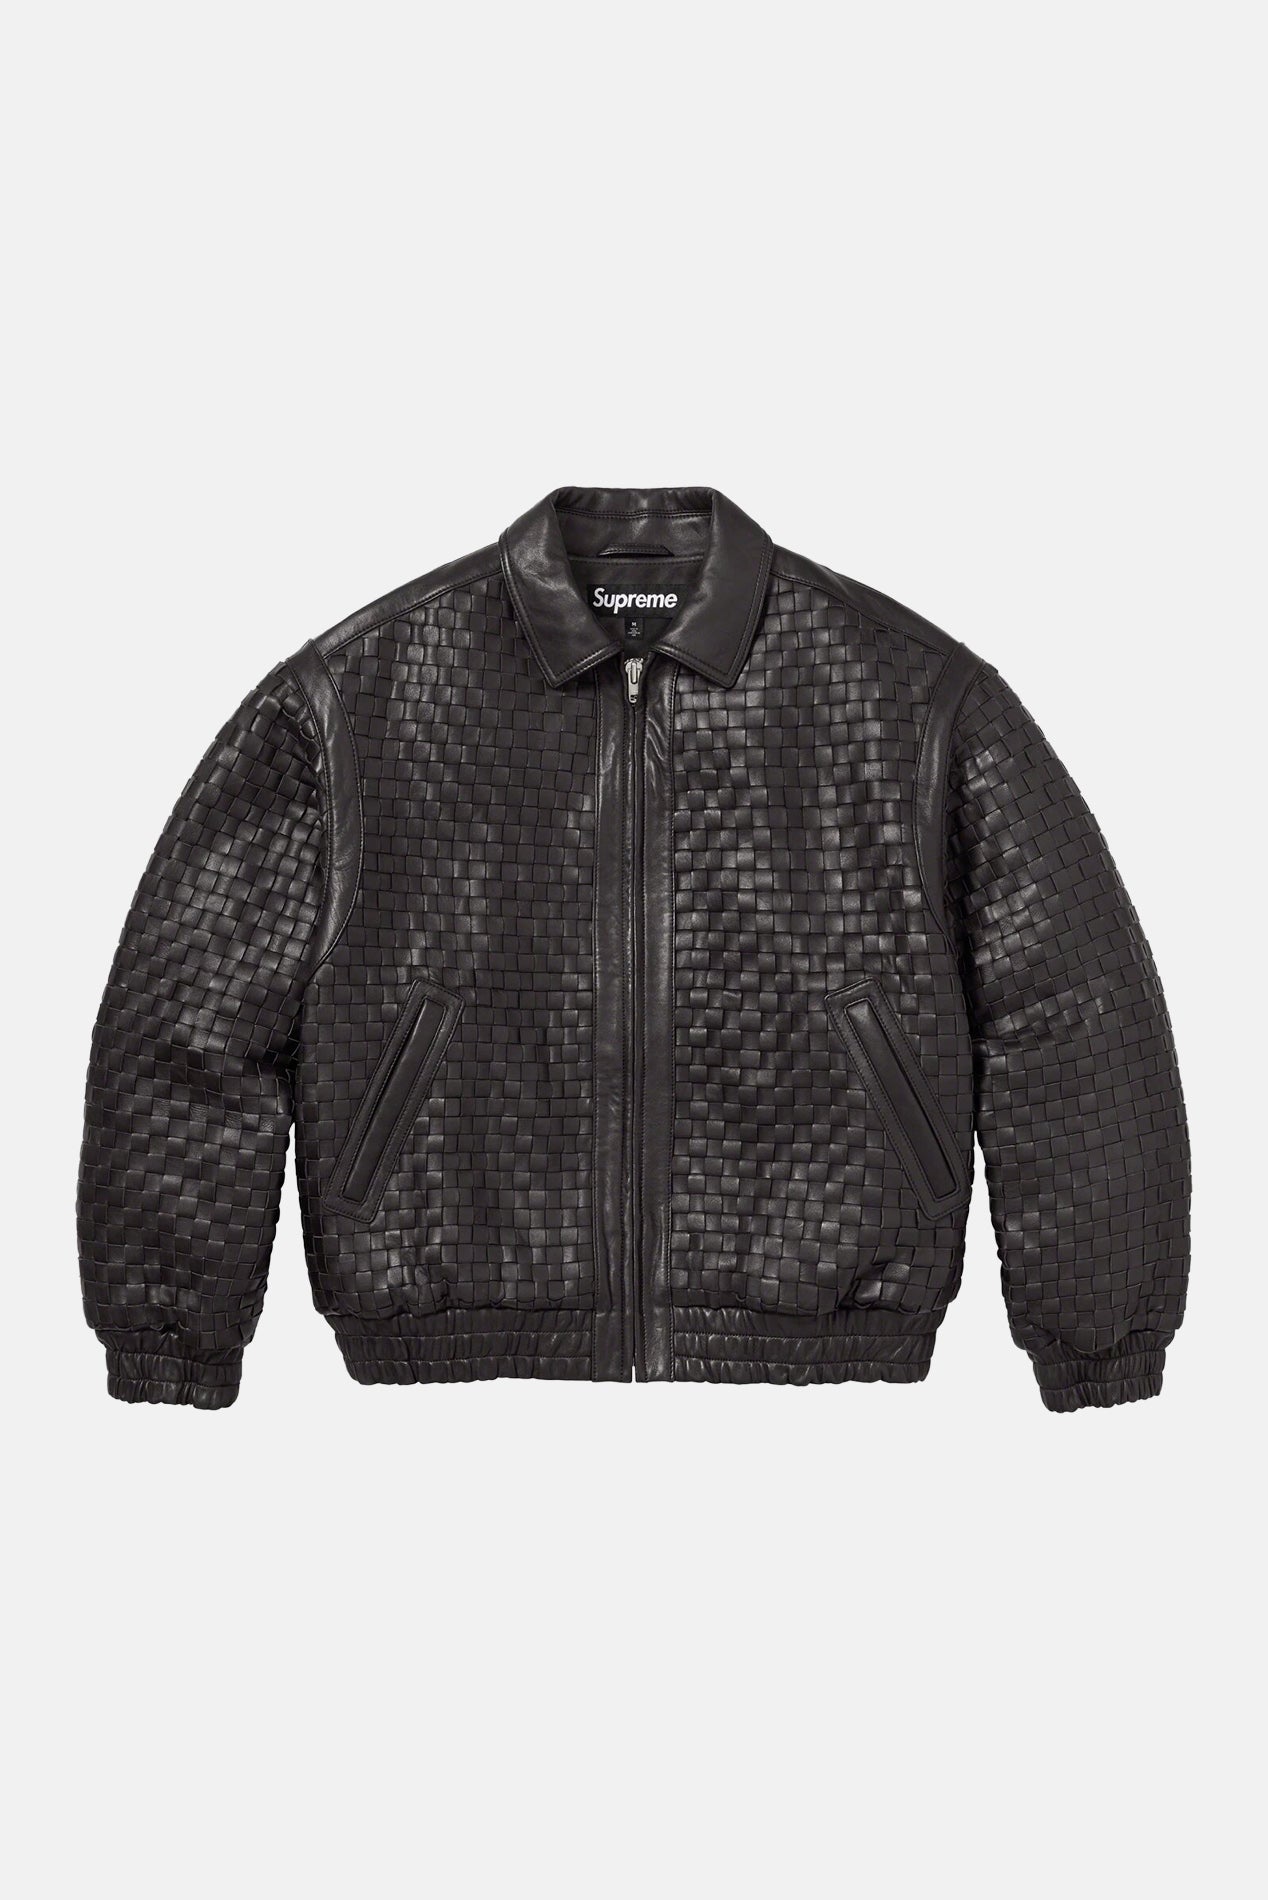 Supreme Woven Leather Varsity Jacket Black – blueandcream